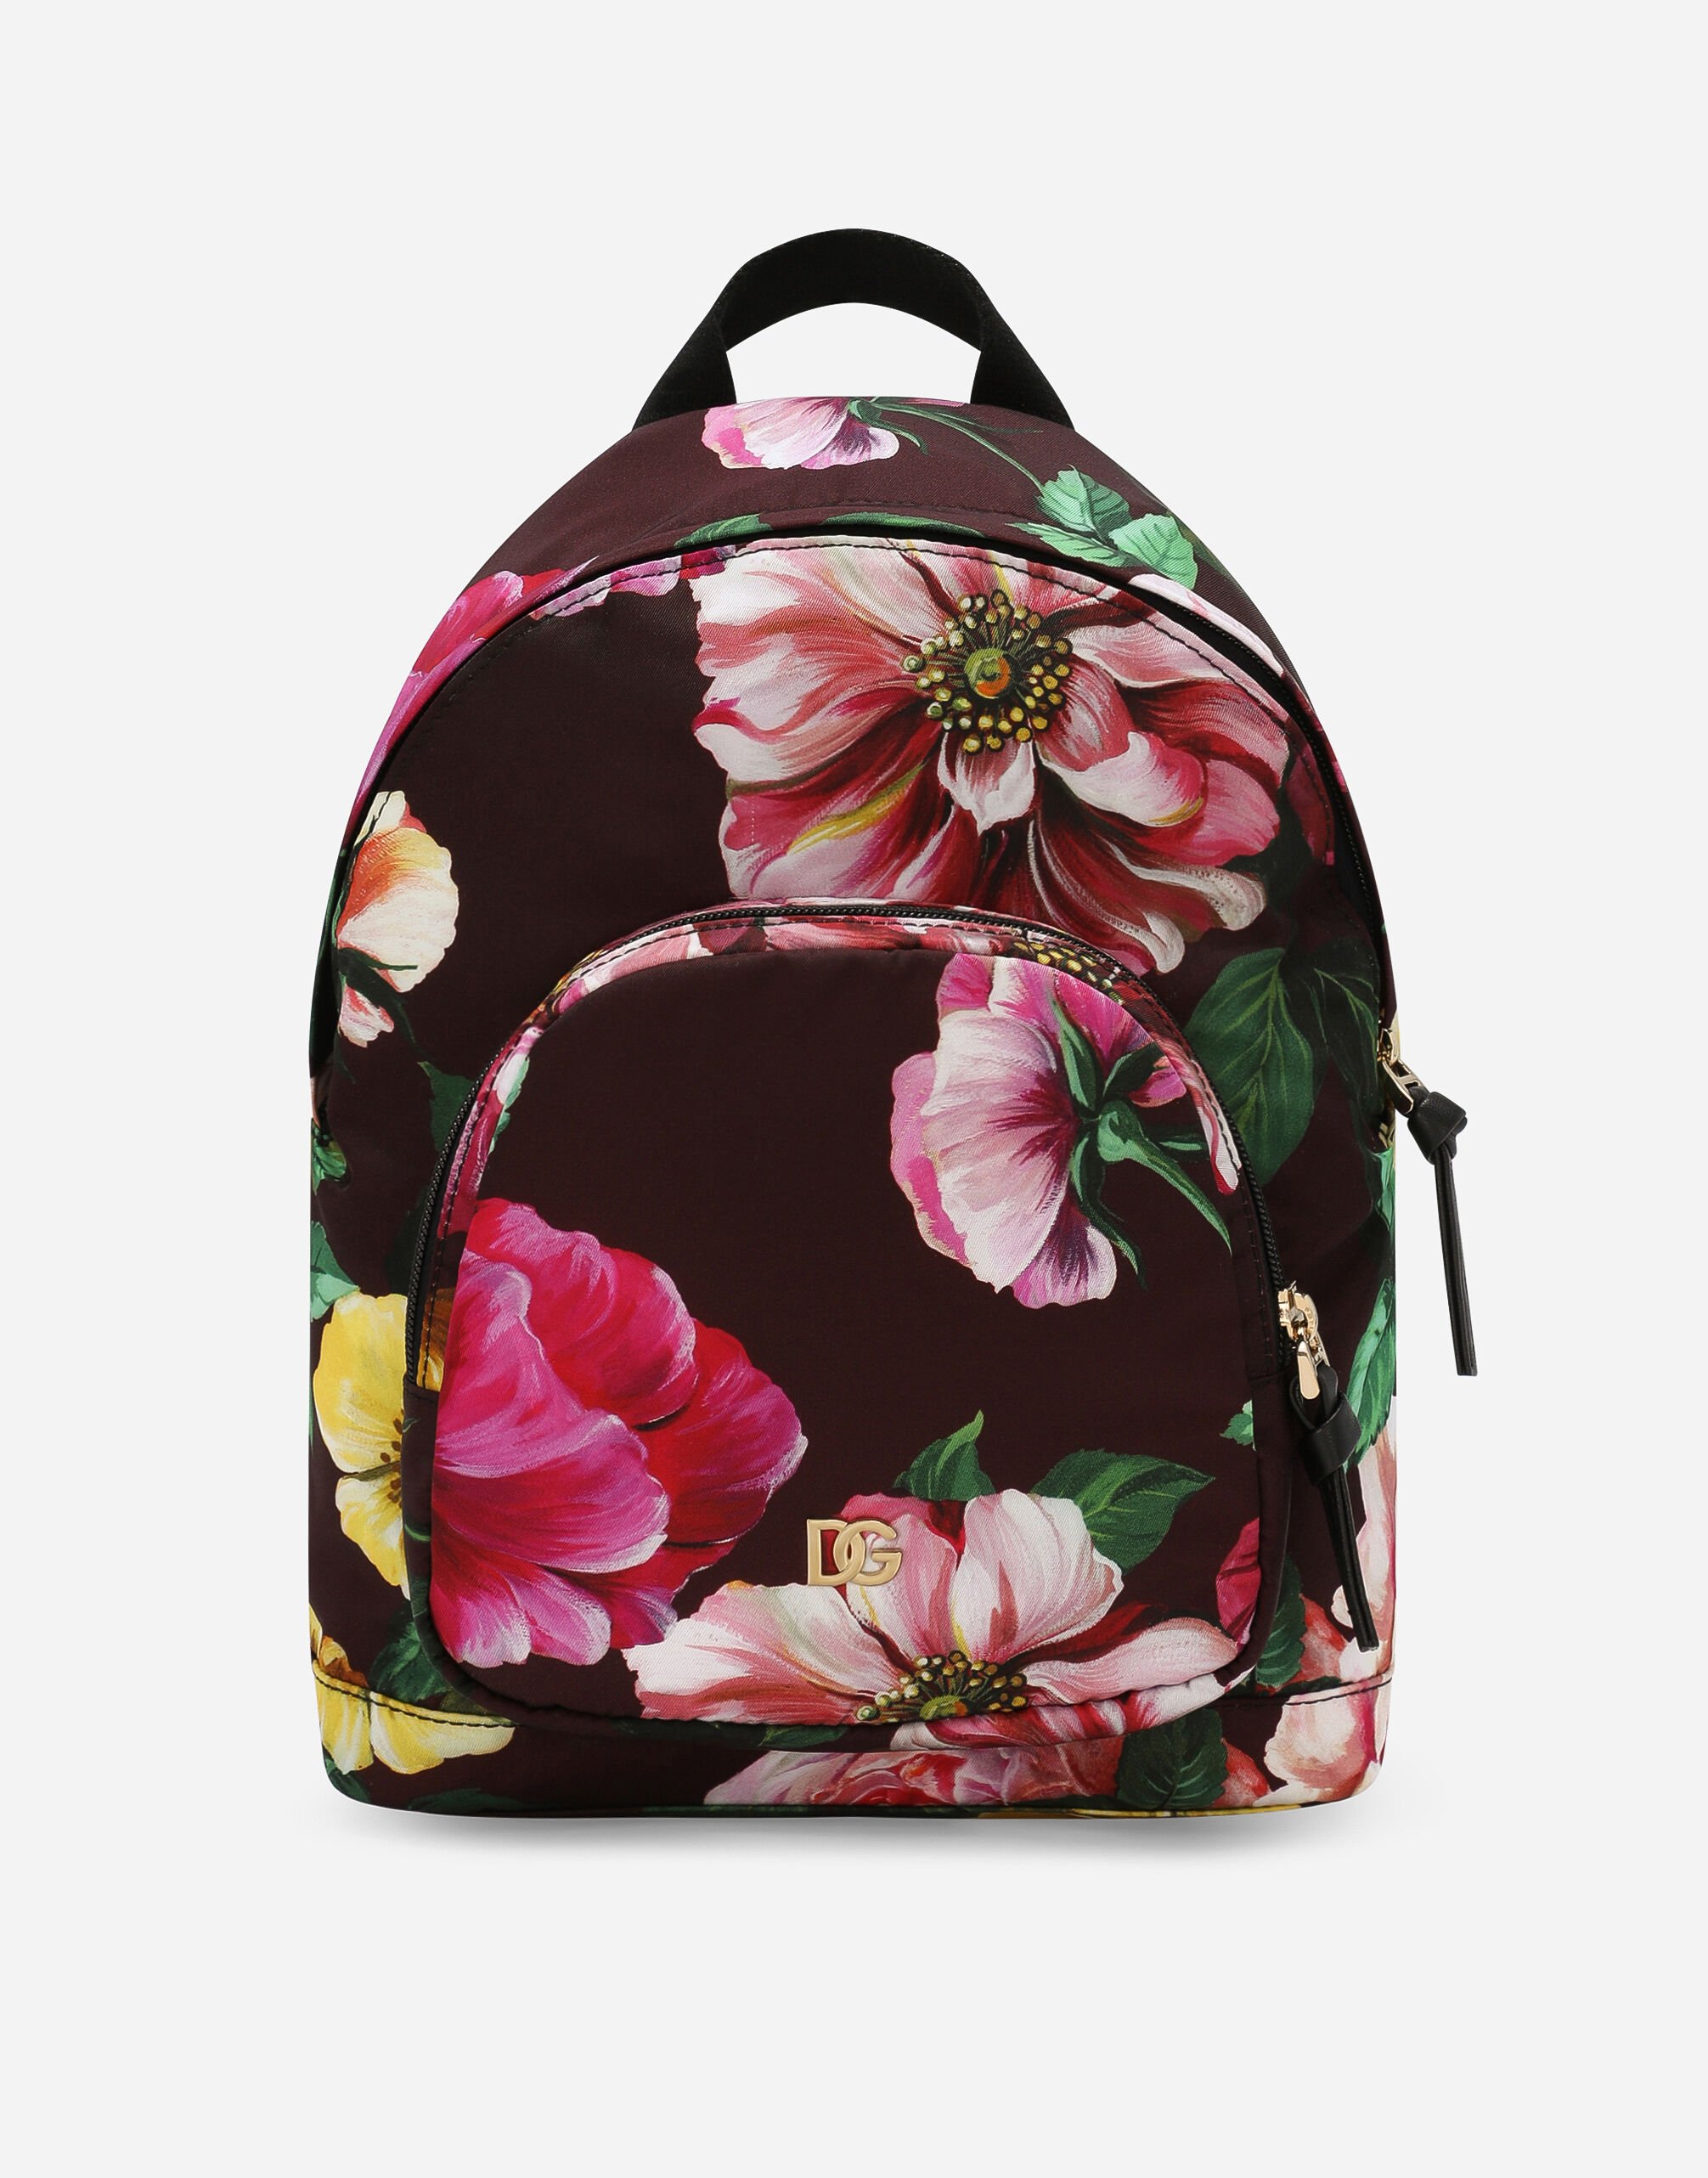 Dolce & Gabbana Printed nylon backpack Print LB4H48HS5QR